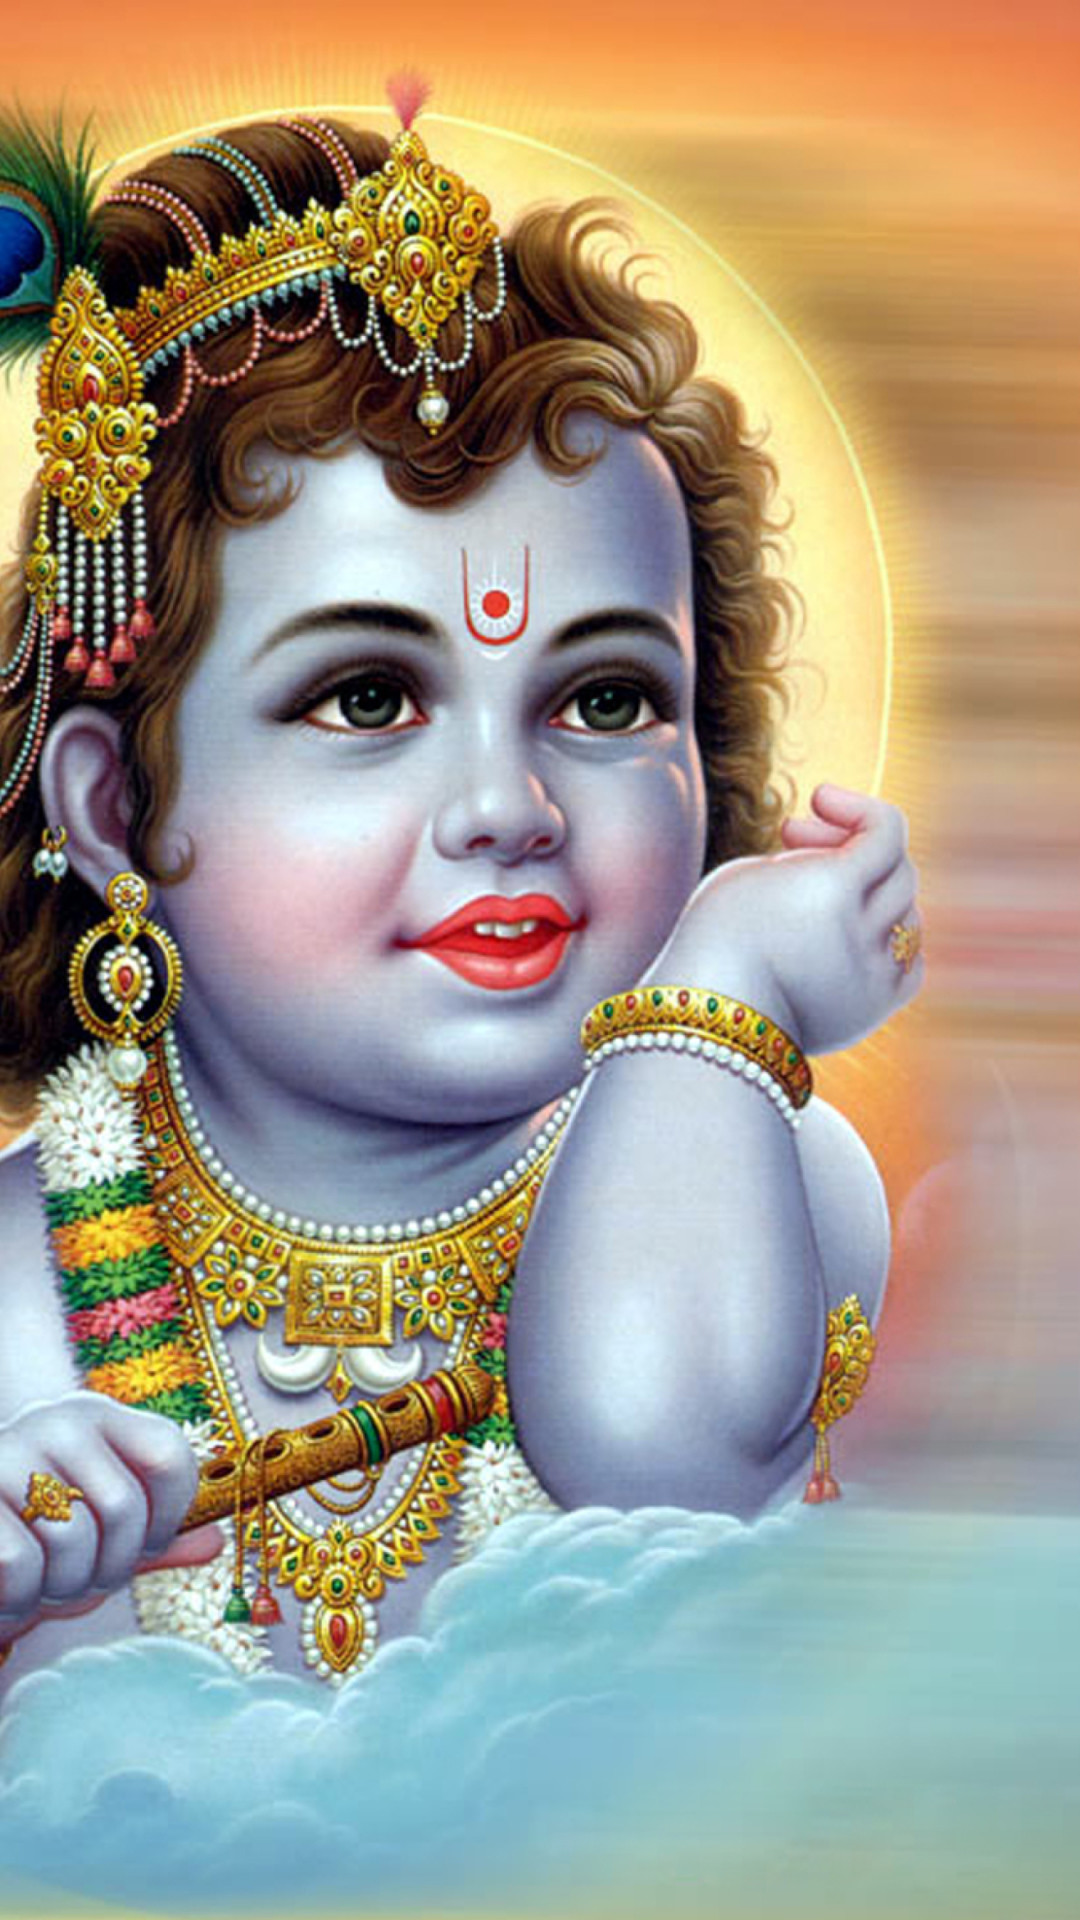 Download Little Lord Krishna 1080 X 1920 Wallpapers 4565745 Krishna Lord Hindu God Mobile9 1080x1920